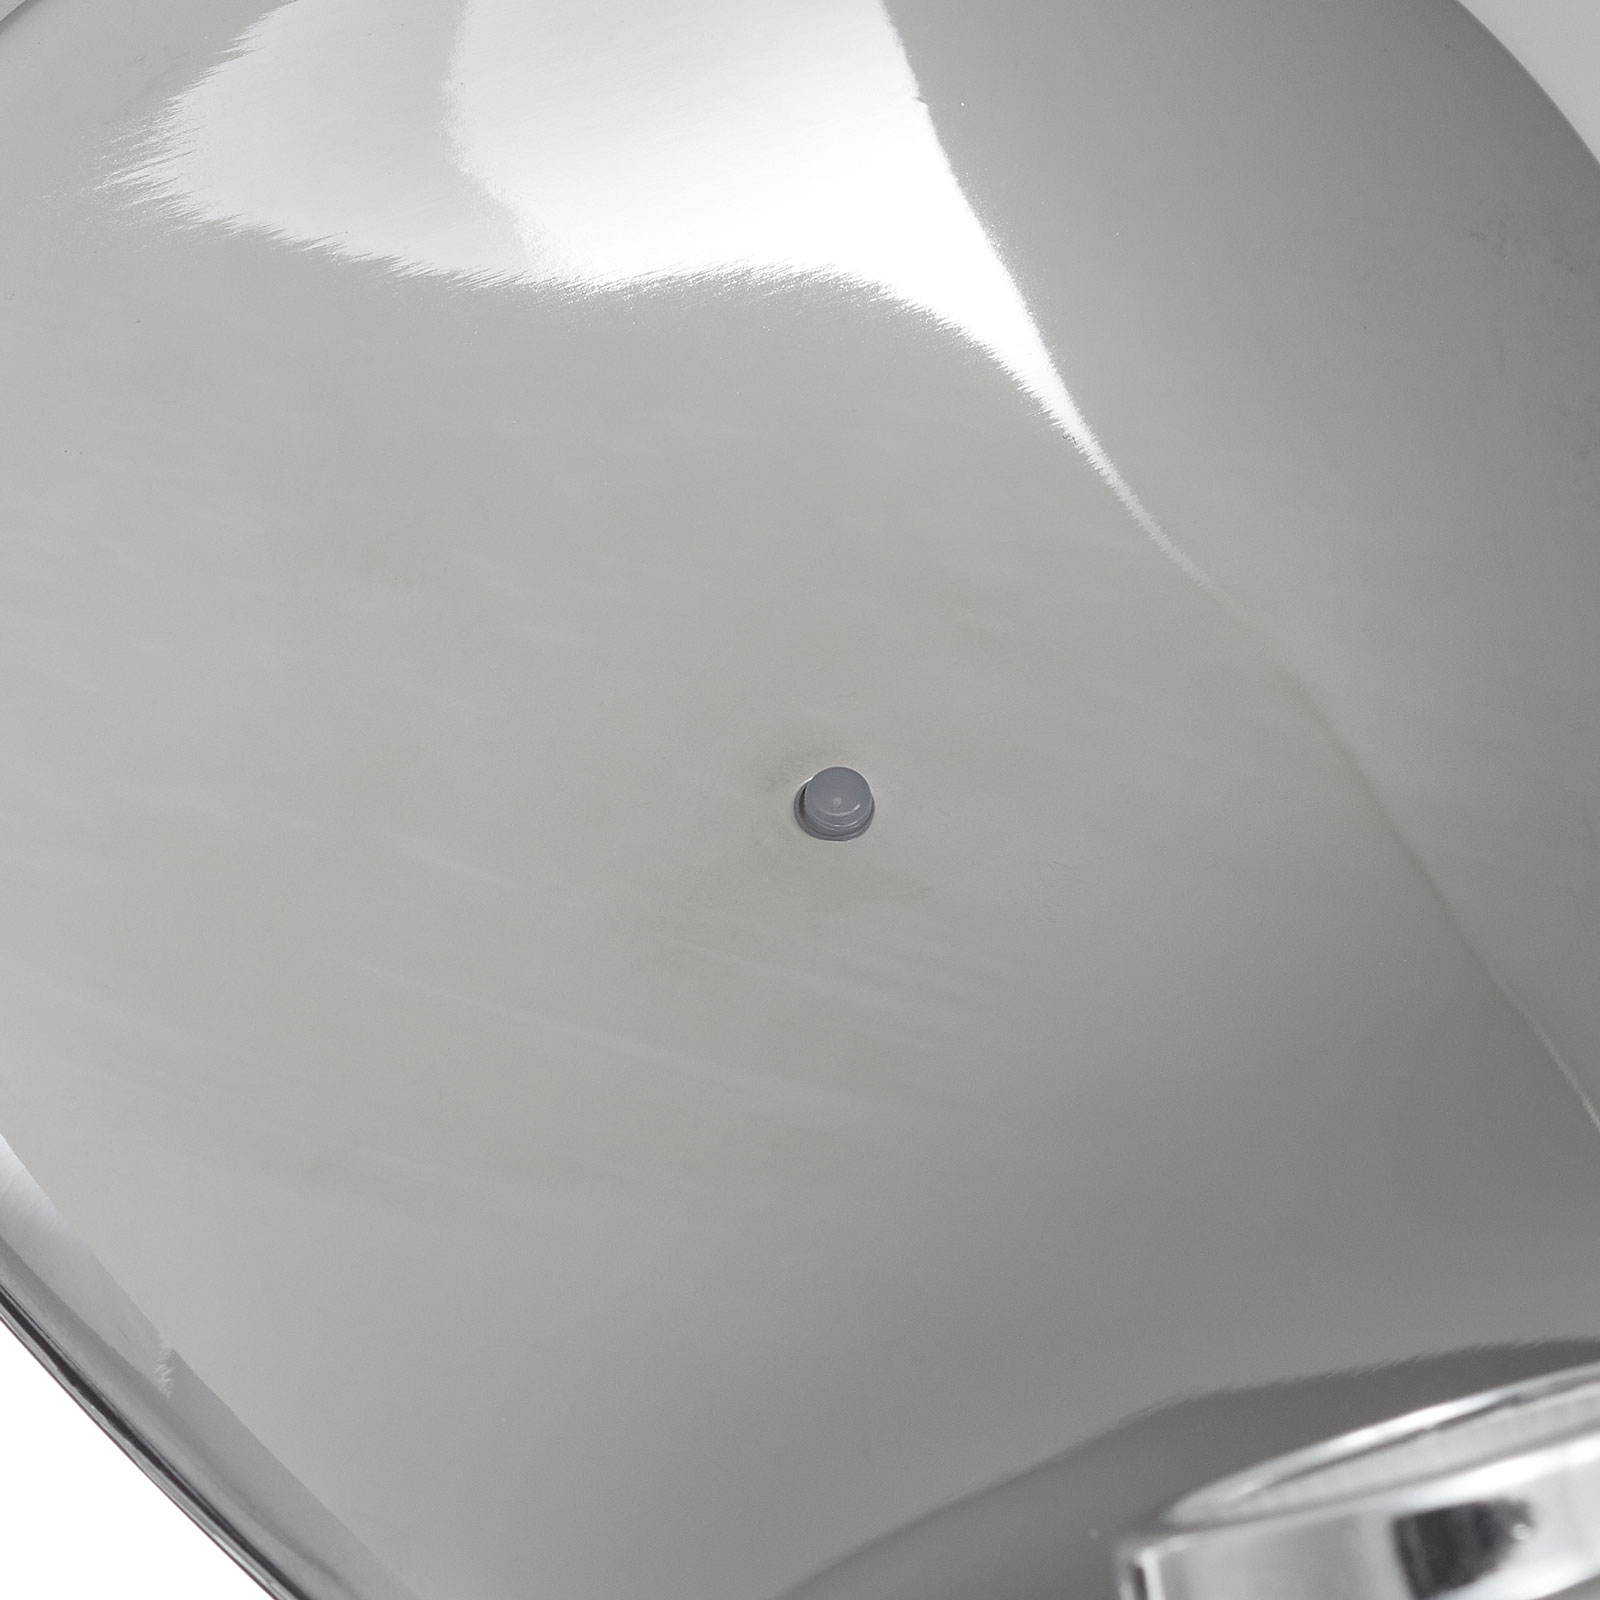 Design-pöytälamppu Curl valkoinen/peili